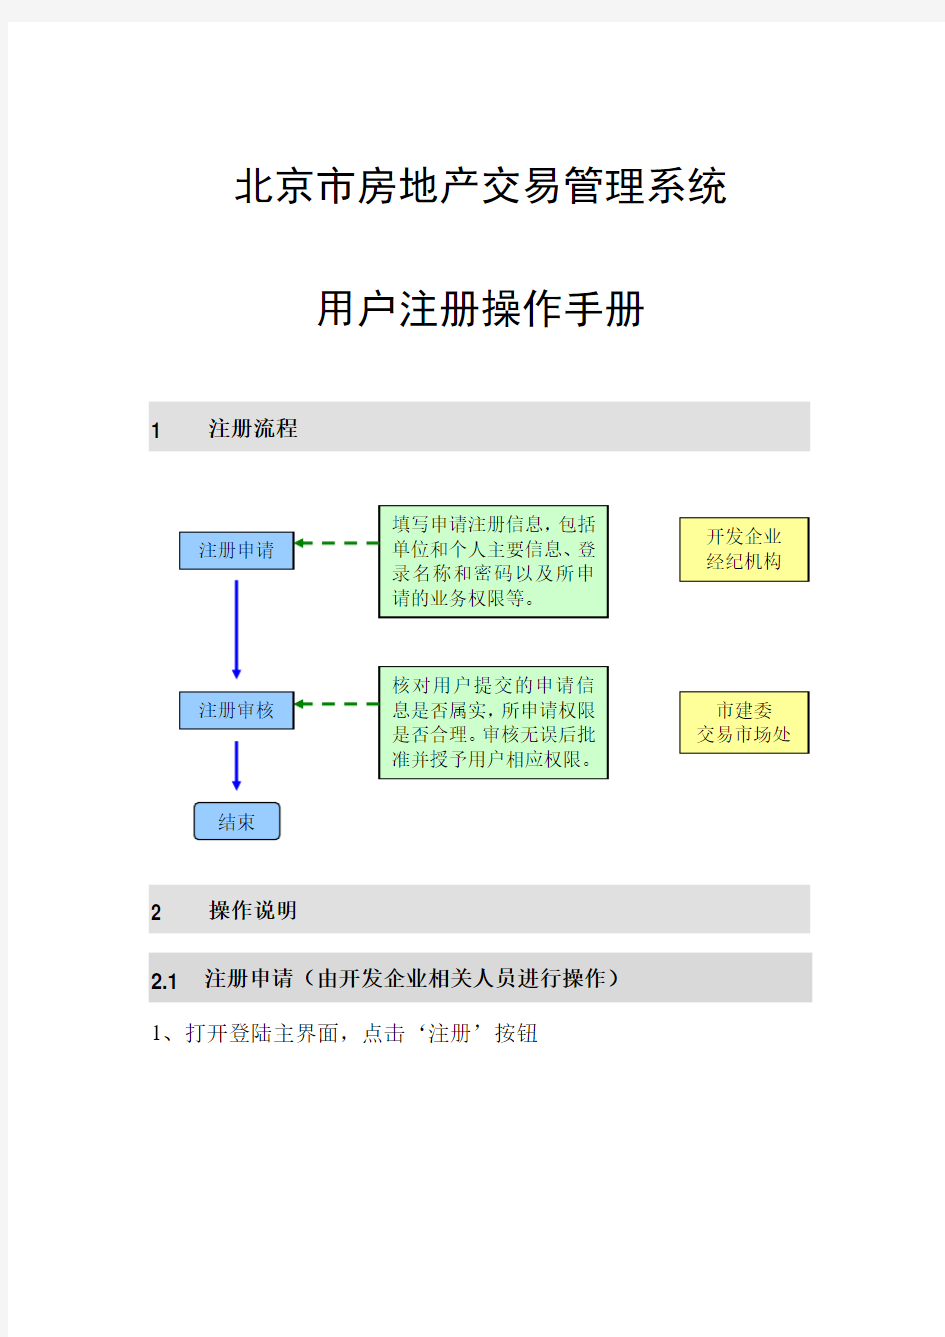 北京房地产交易管理系统